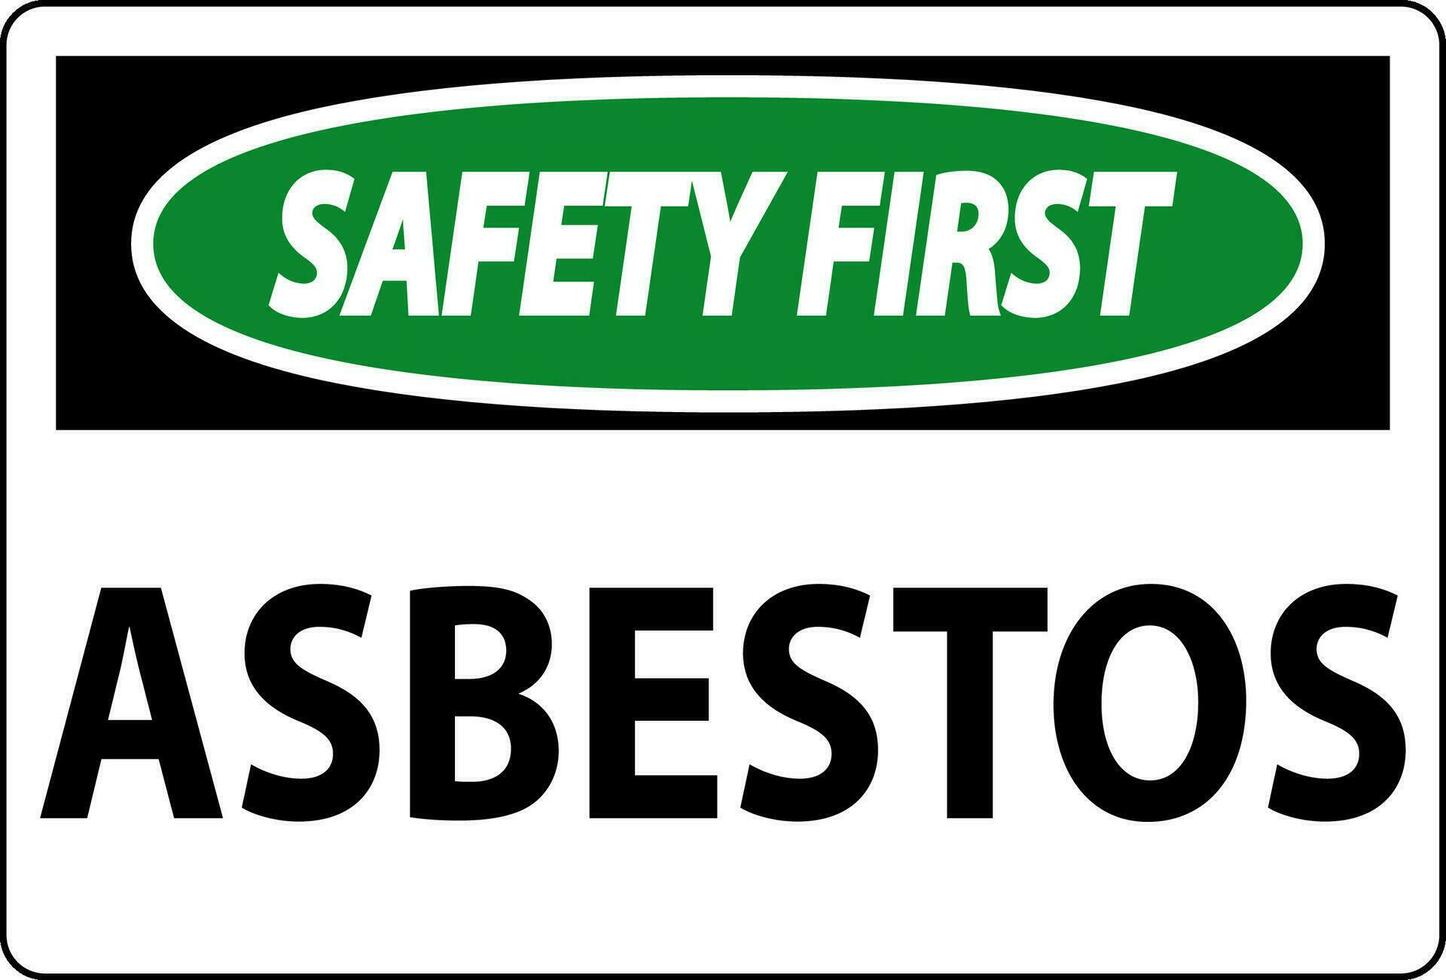 asbest veiligheid eerste tekens asbest risico Oppervlakte geautoriseerd personeel enkel en alleen vector